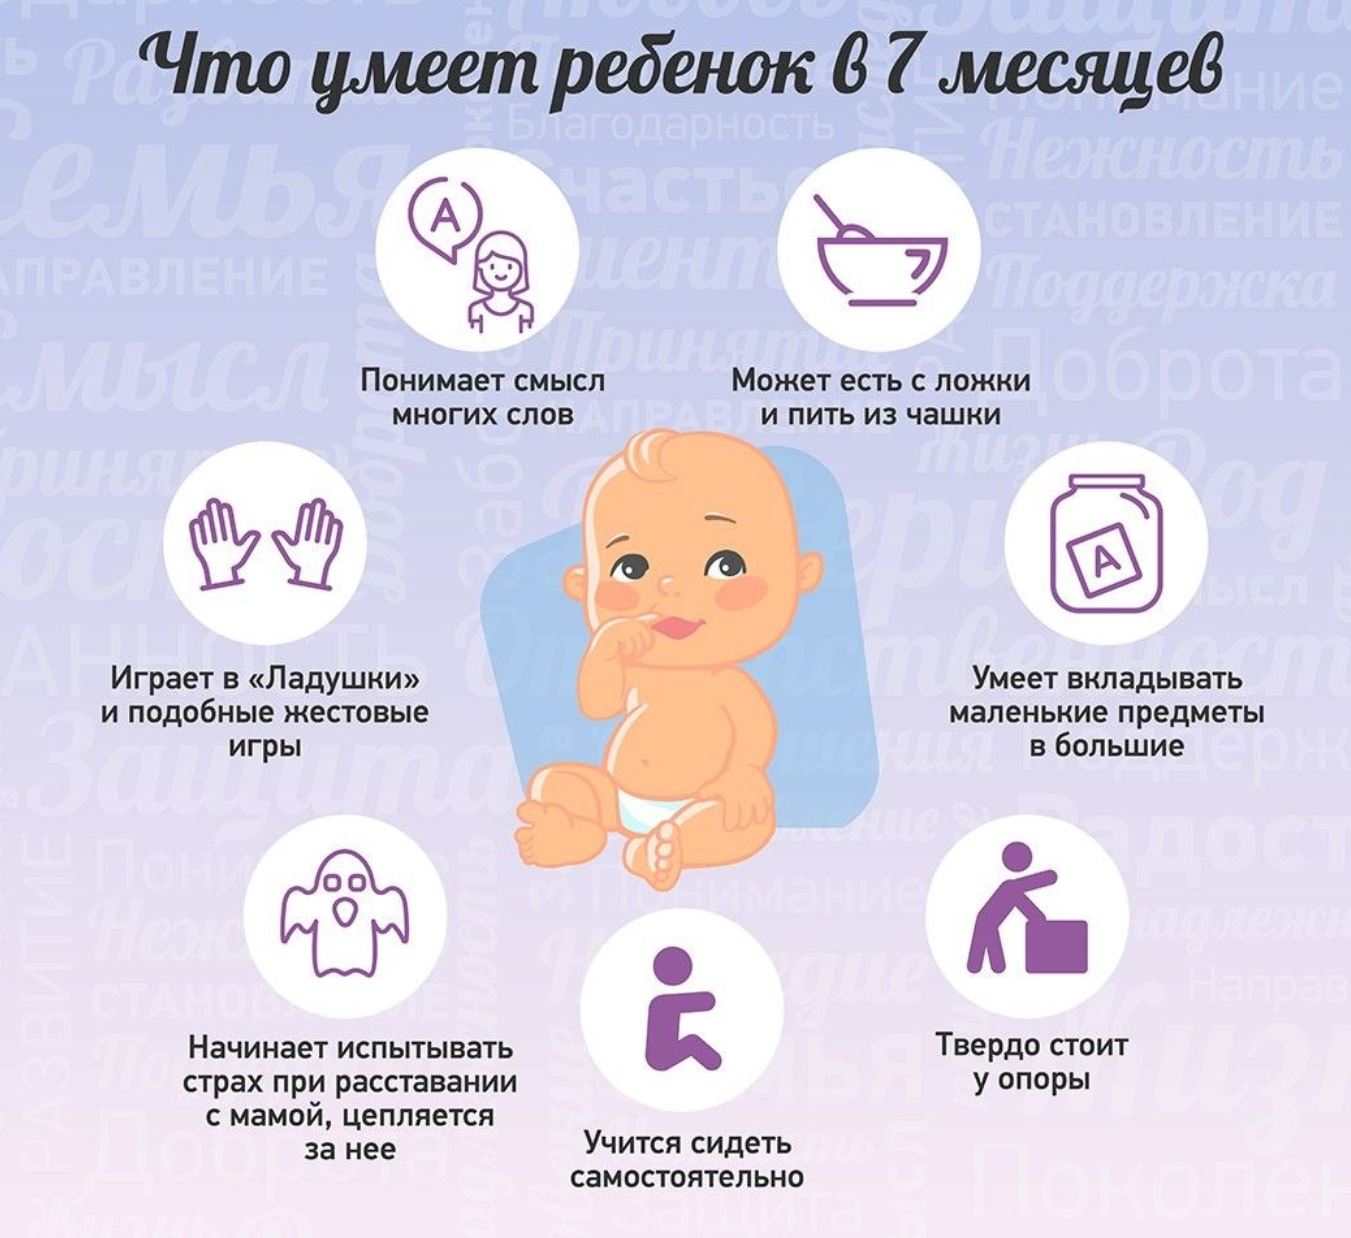 Развитие ребенка в 8 месяцев: что должен уметь делать, как развивать малыша в этот период и другие рекомендации